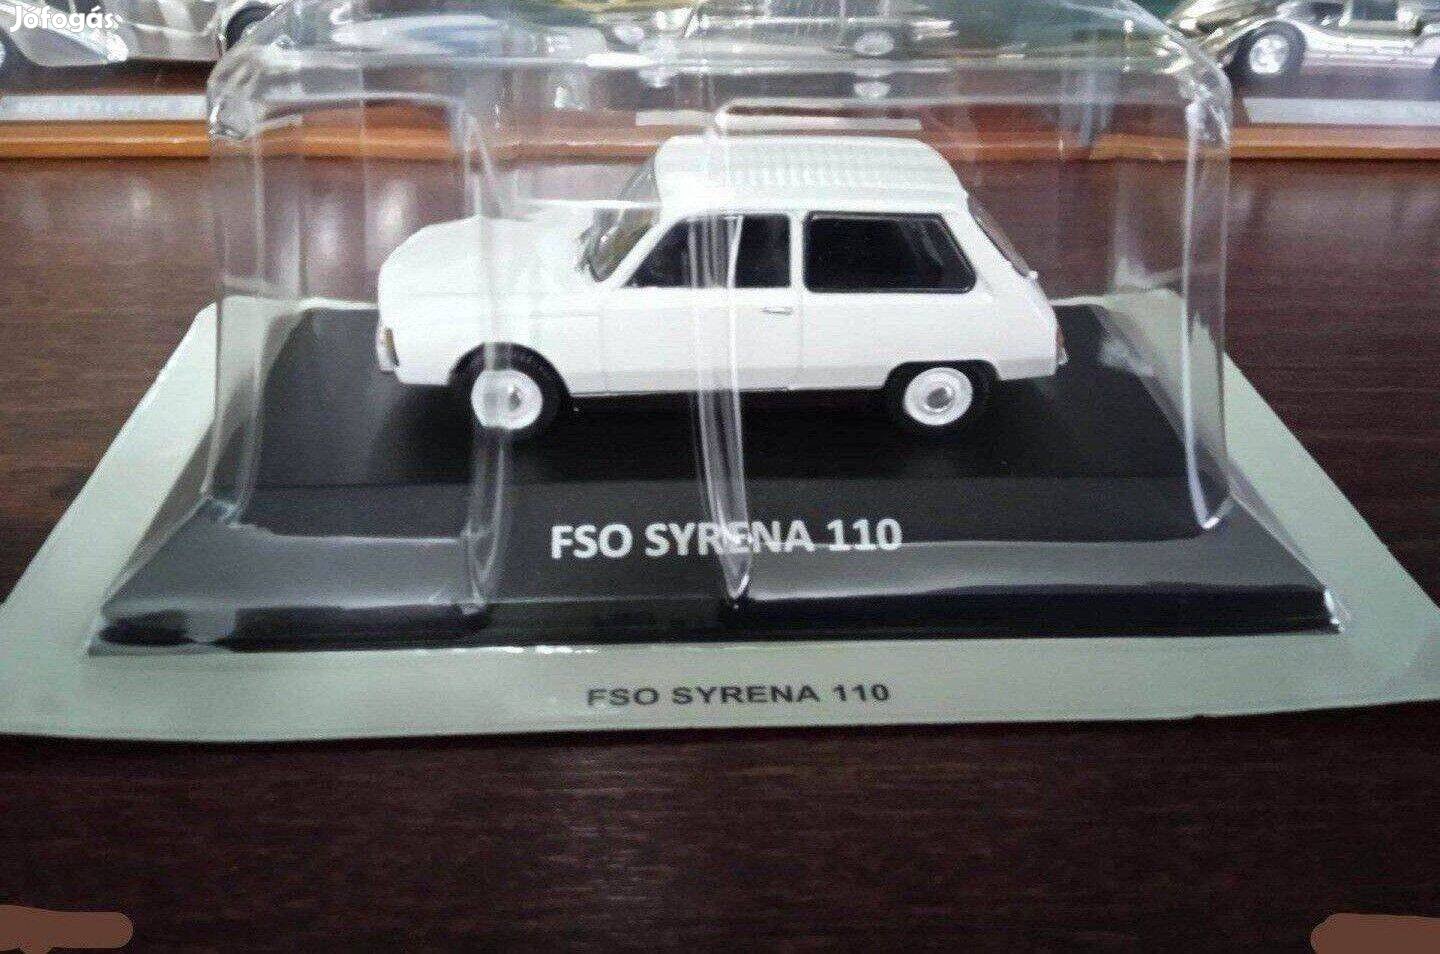 Syrena 110 FSO kisauto modell 1/43 Eladó